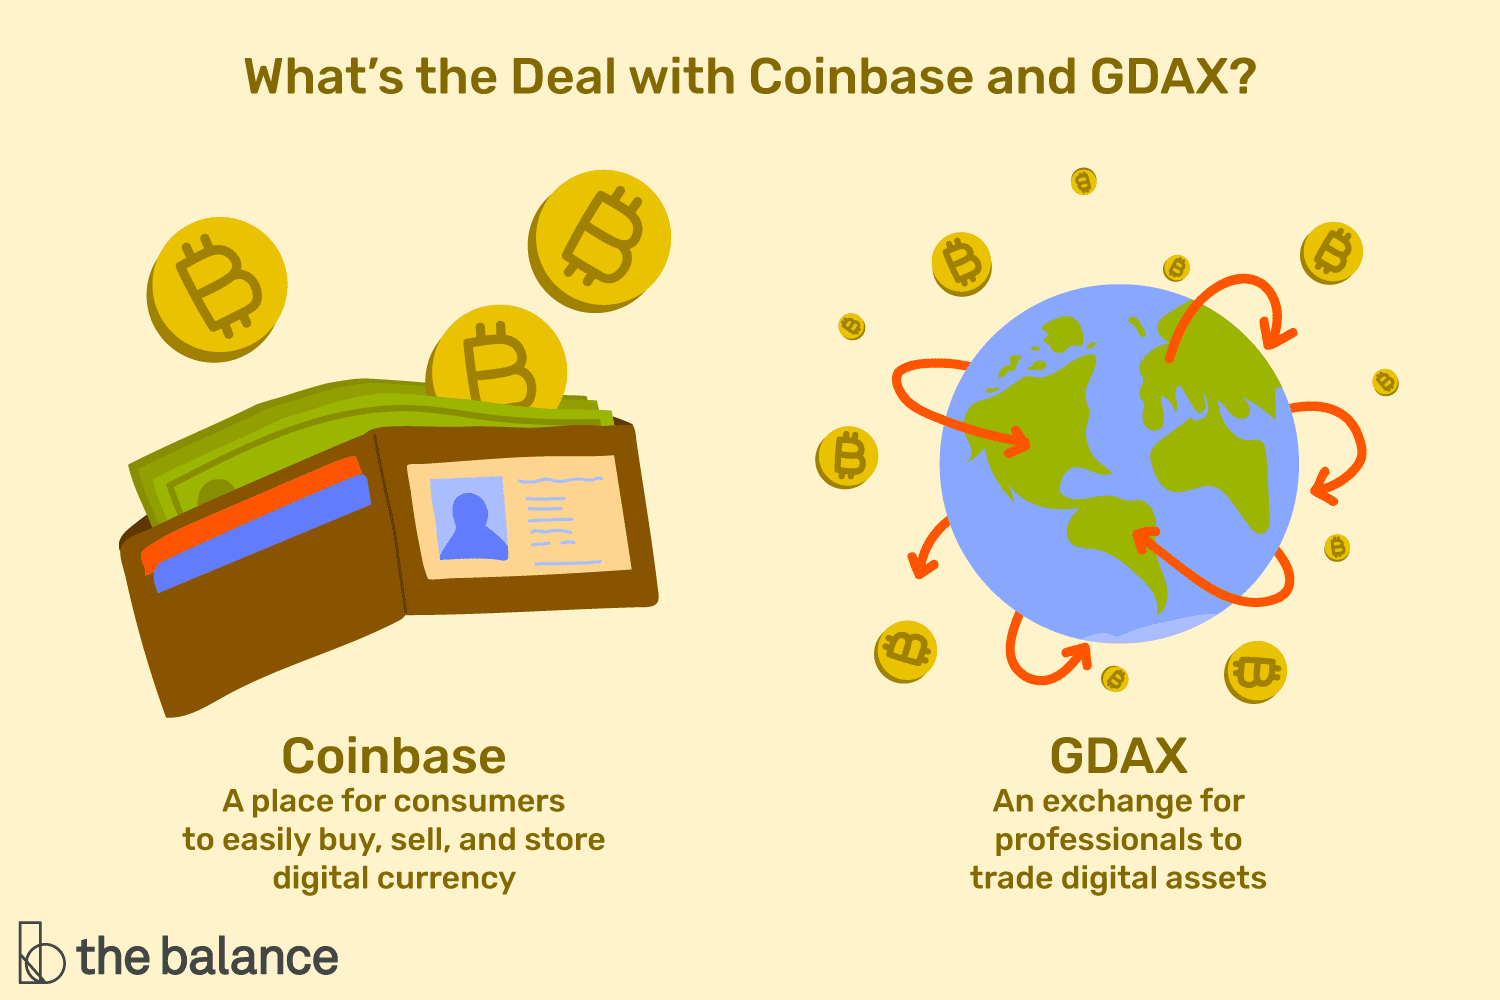 自定义插图显示了与coinbase和GDAX的交易。Coinbase被显示为一个比特币钱包，消费者可以在这里轻松购买、出售和存储数字货币。GDAX显示为一个围绕比特币的球体，它是专业人士交易数字资产的交易所。GDAX现在实际上被称为Coinbase Pro。